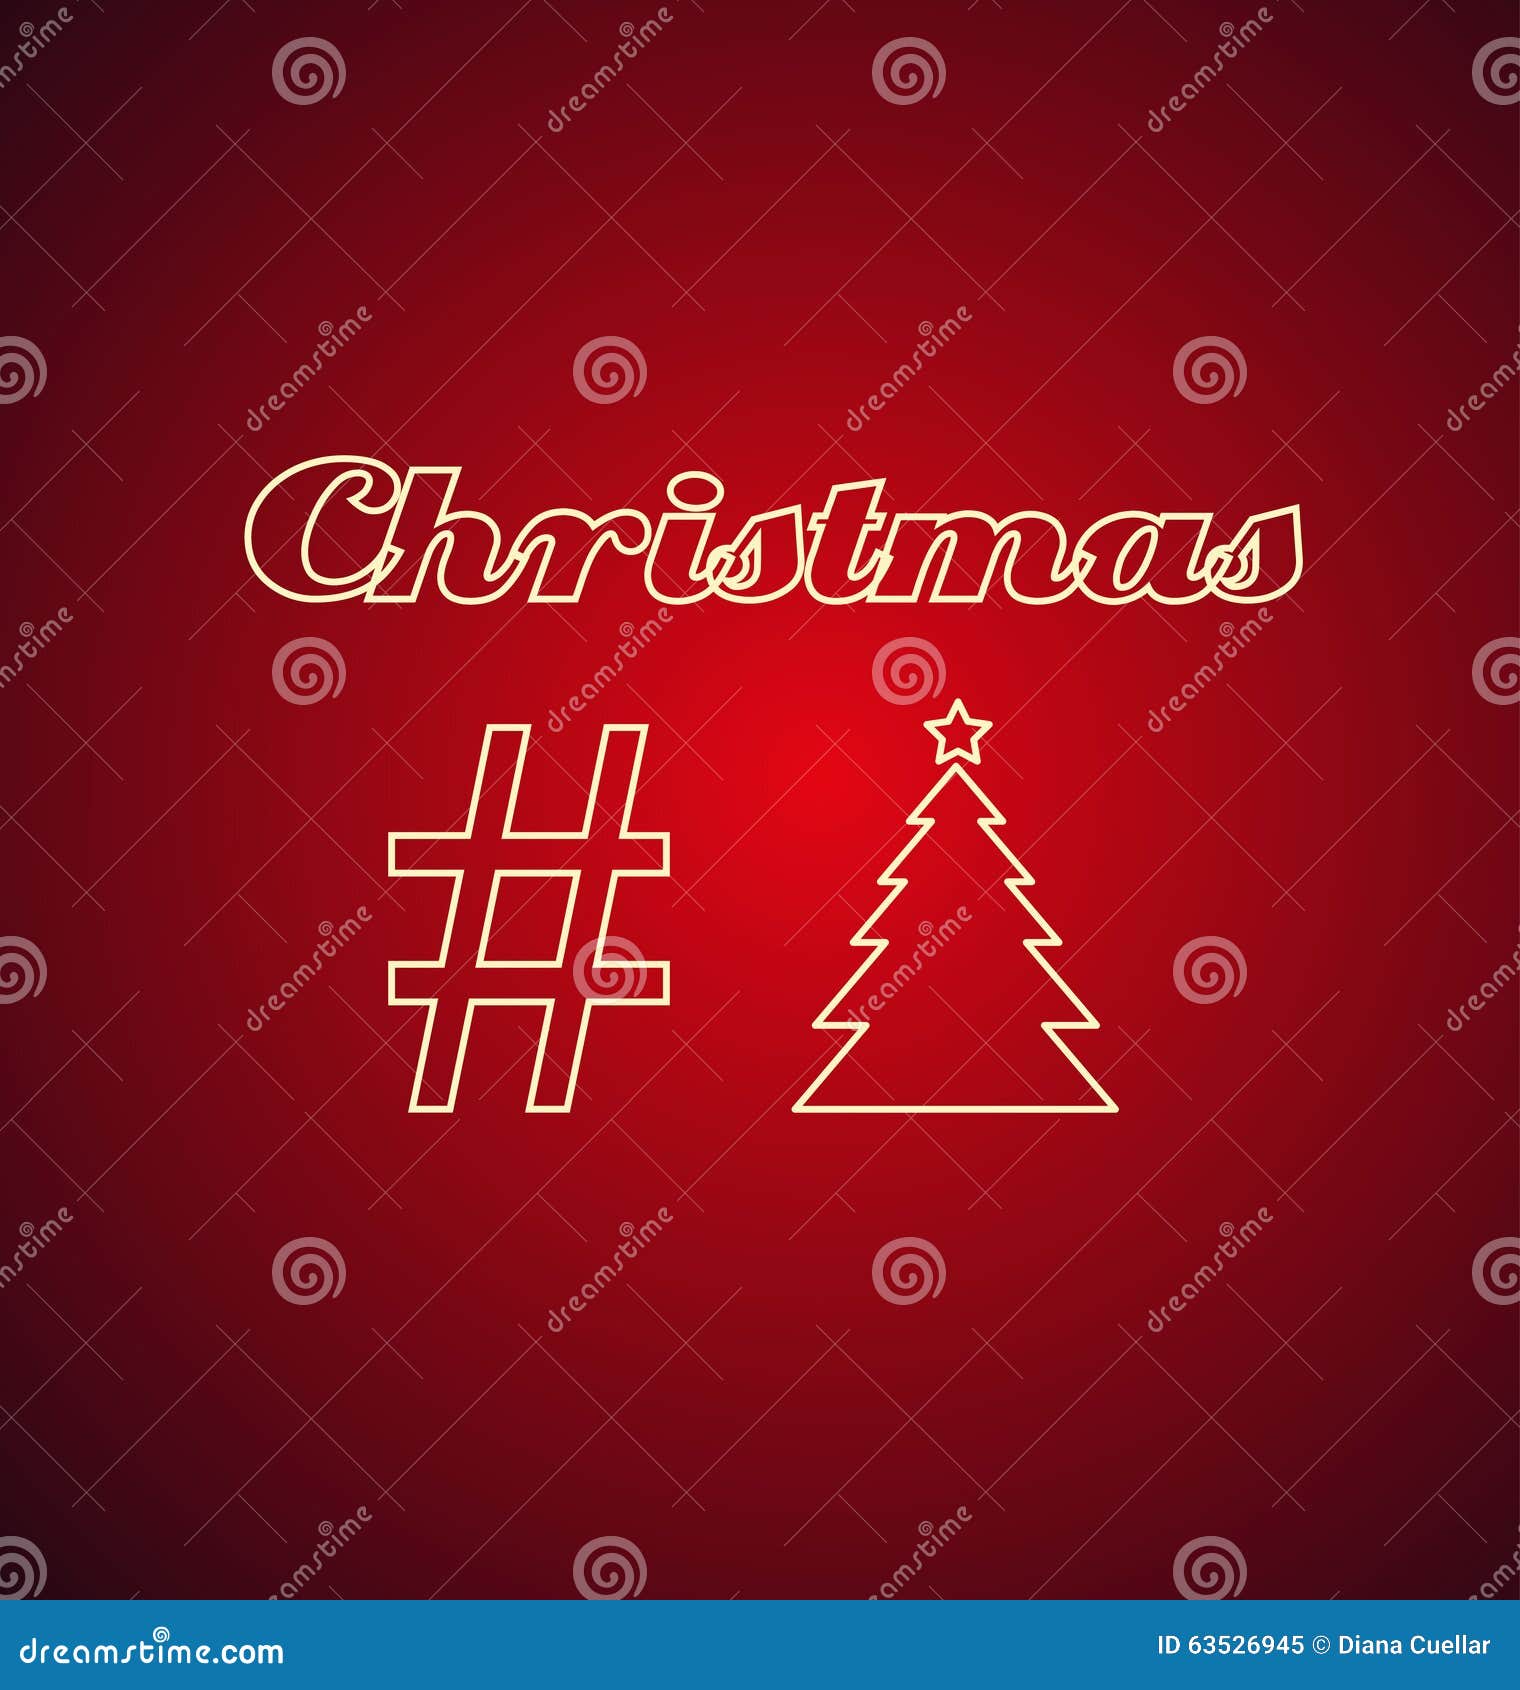 Hashtag Natale.Insegna Al Neon Del Hashtag Di Natale Illustrazione Di Stock Illustrazione Di Celebrazione Bianco 63526945